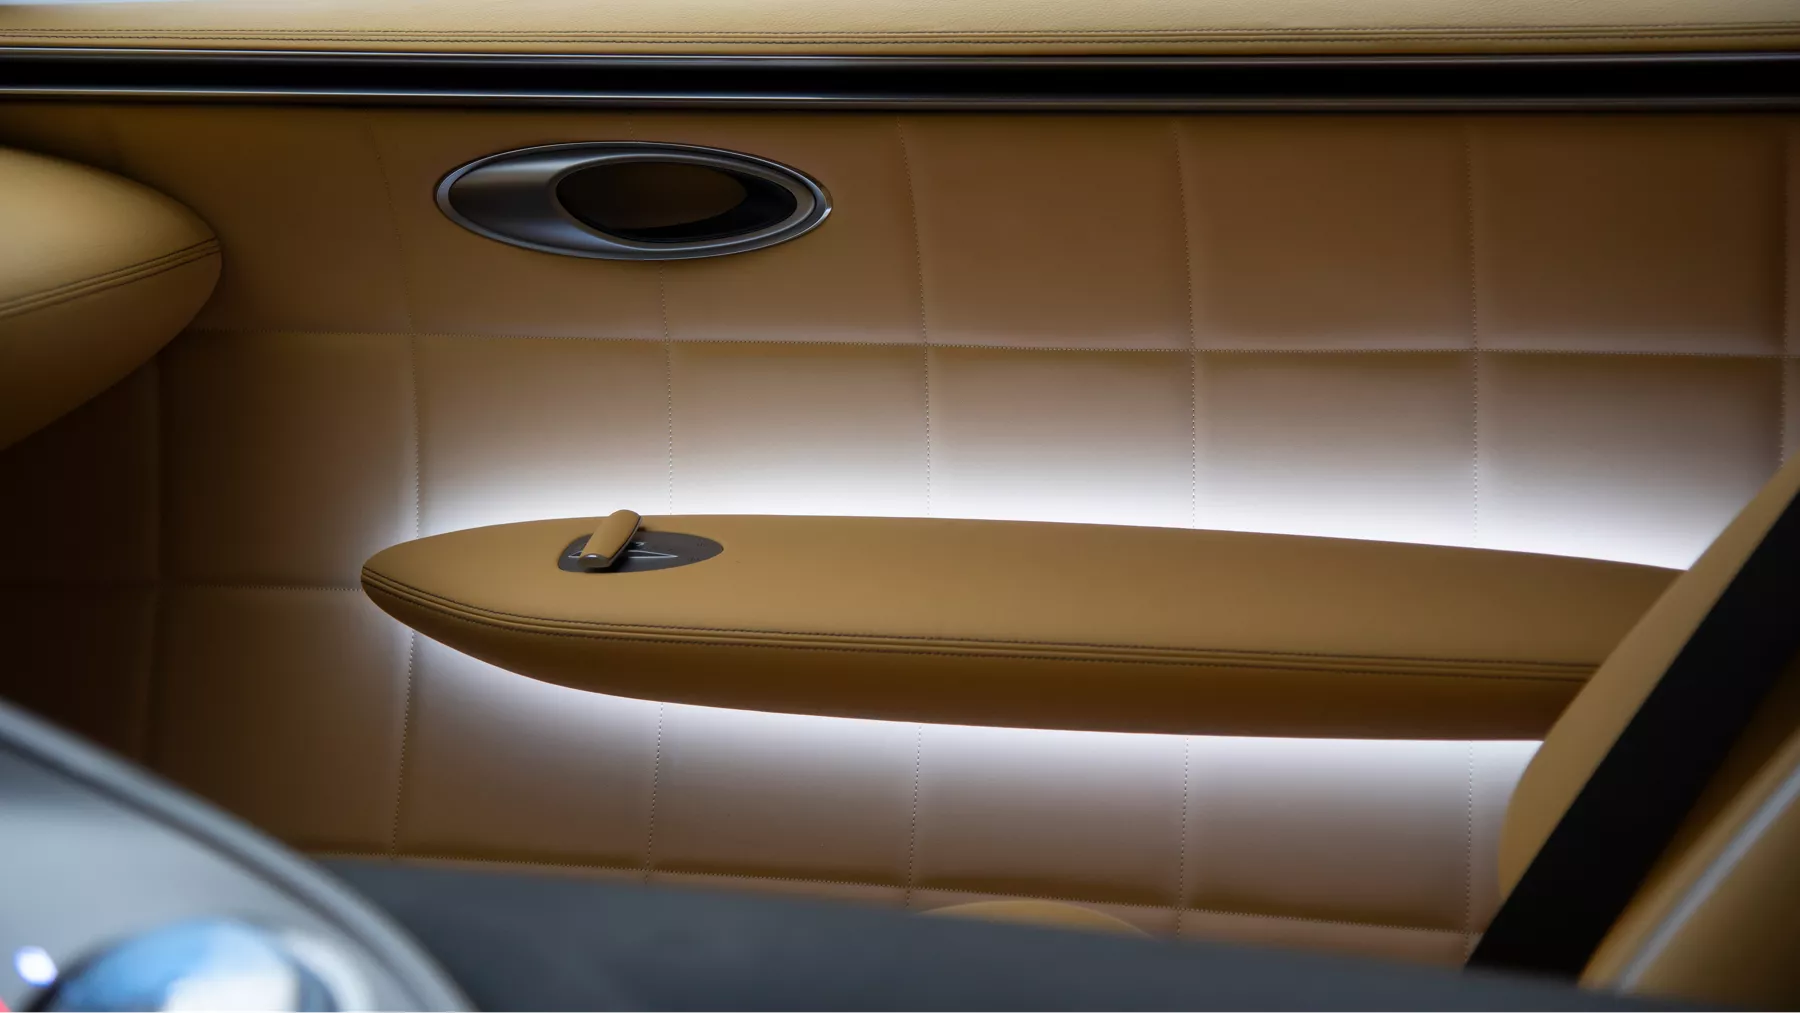 X Speedium Coupe 概念車乘客車門上的控制裝置。